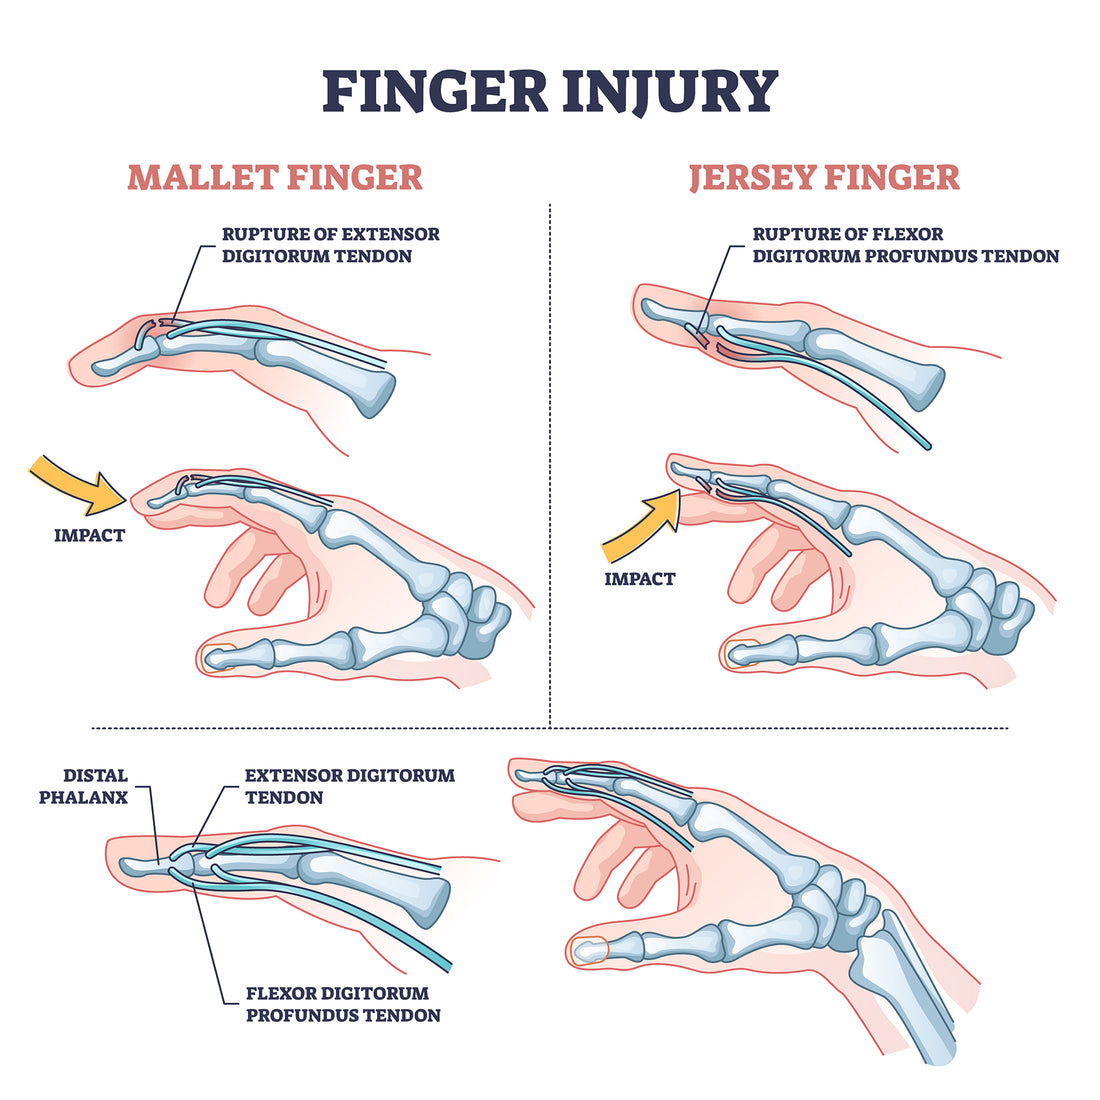 Mallet Finger Overview